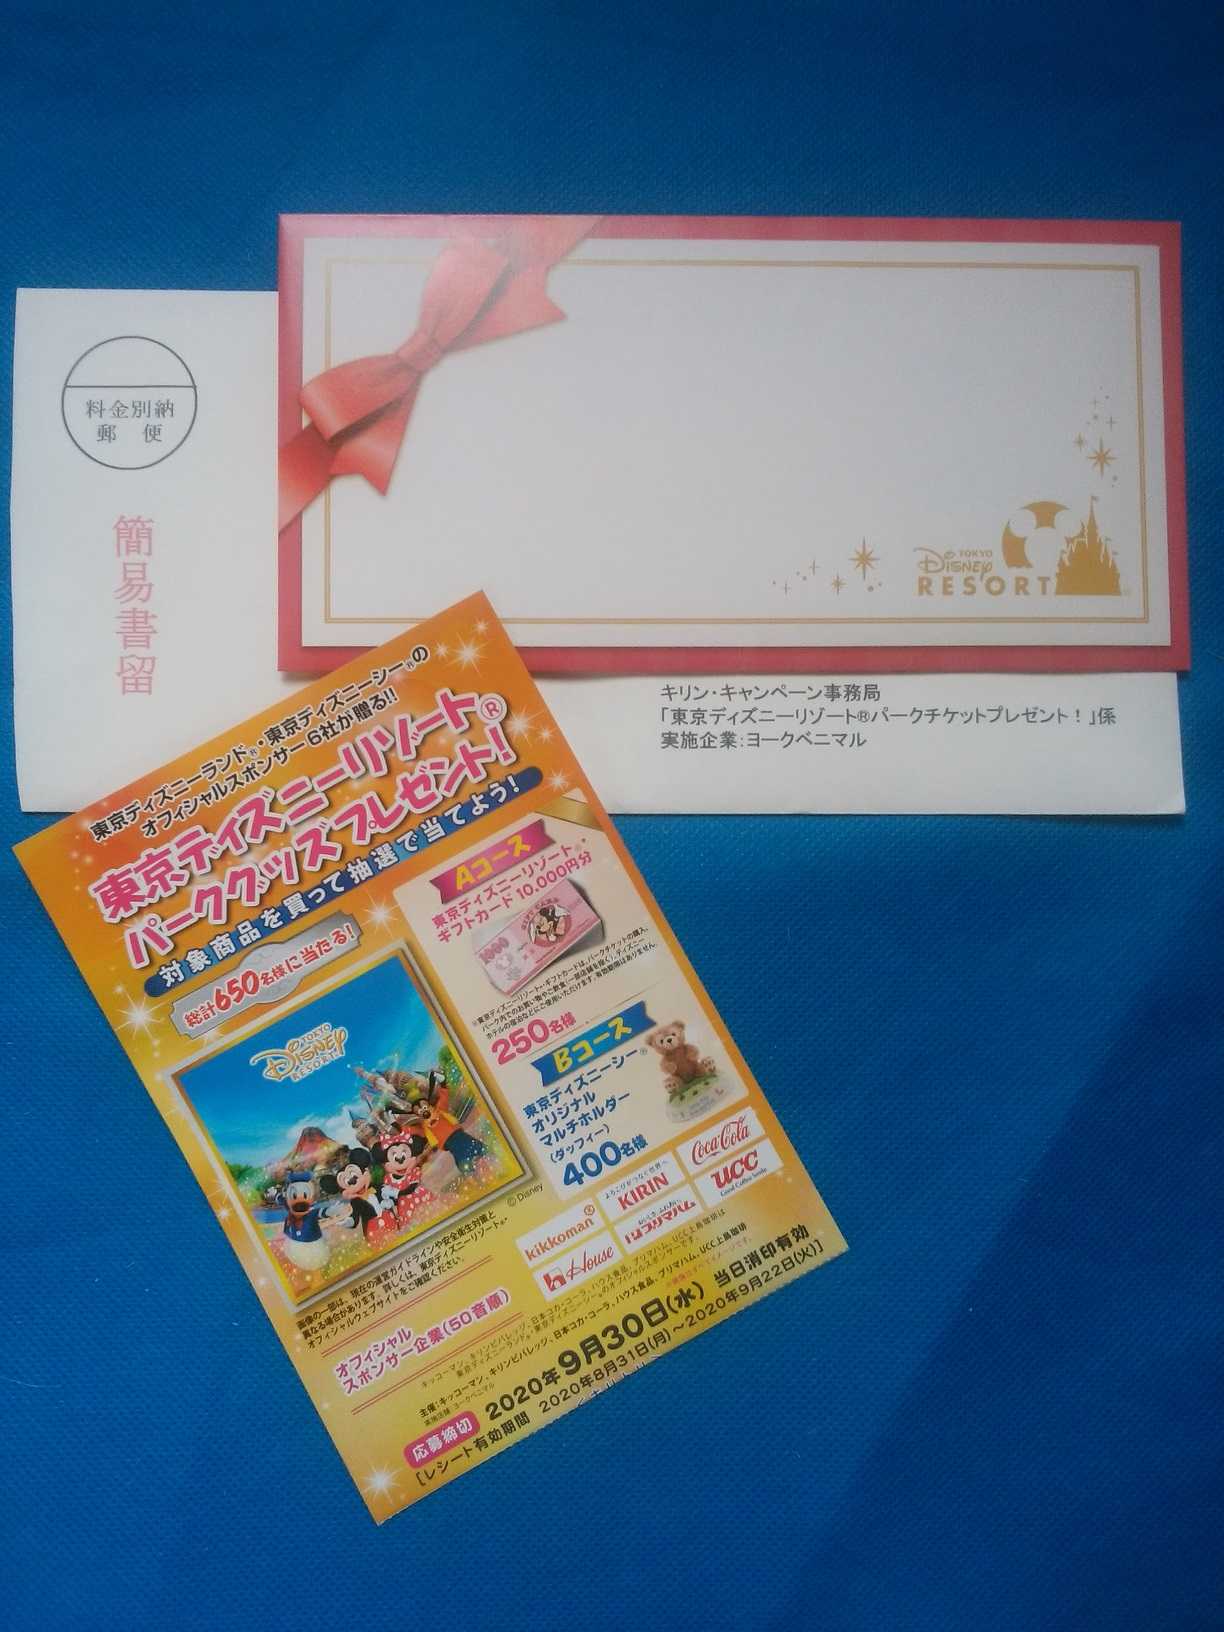 ヨークベニマル 東京ディズニーリゾート パークグッズプレゼント キャンペーン 空 そら 空 から 空 くう 楽天ブログ